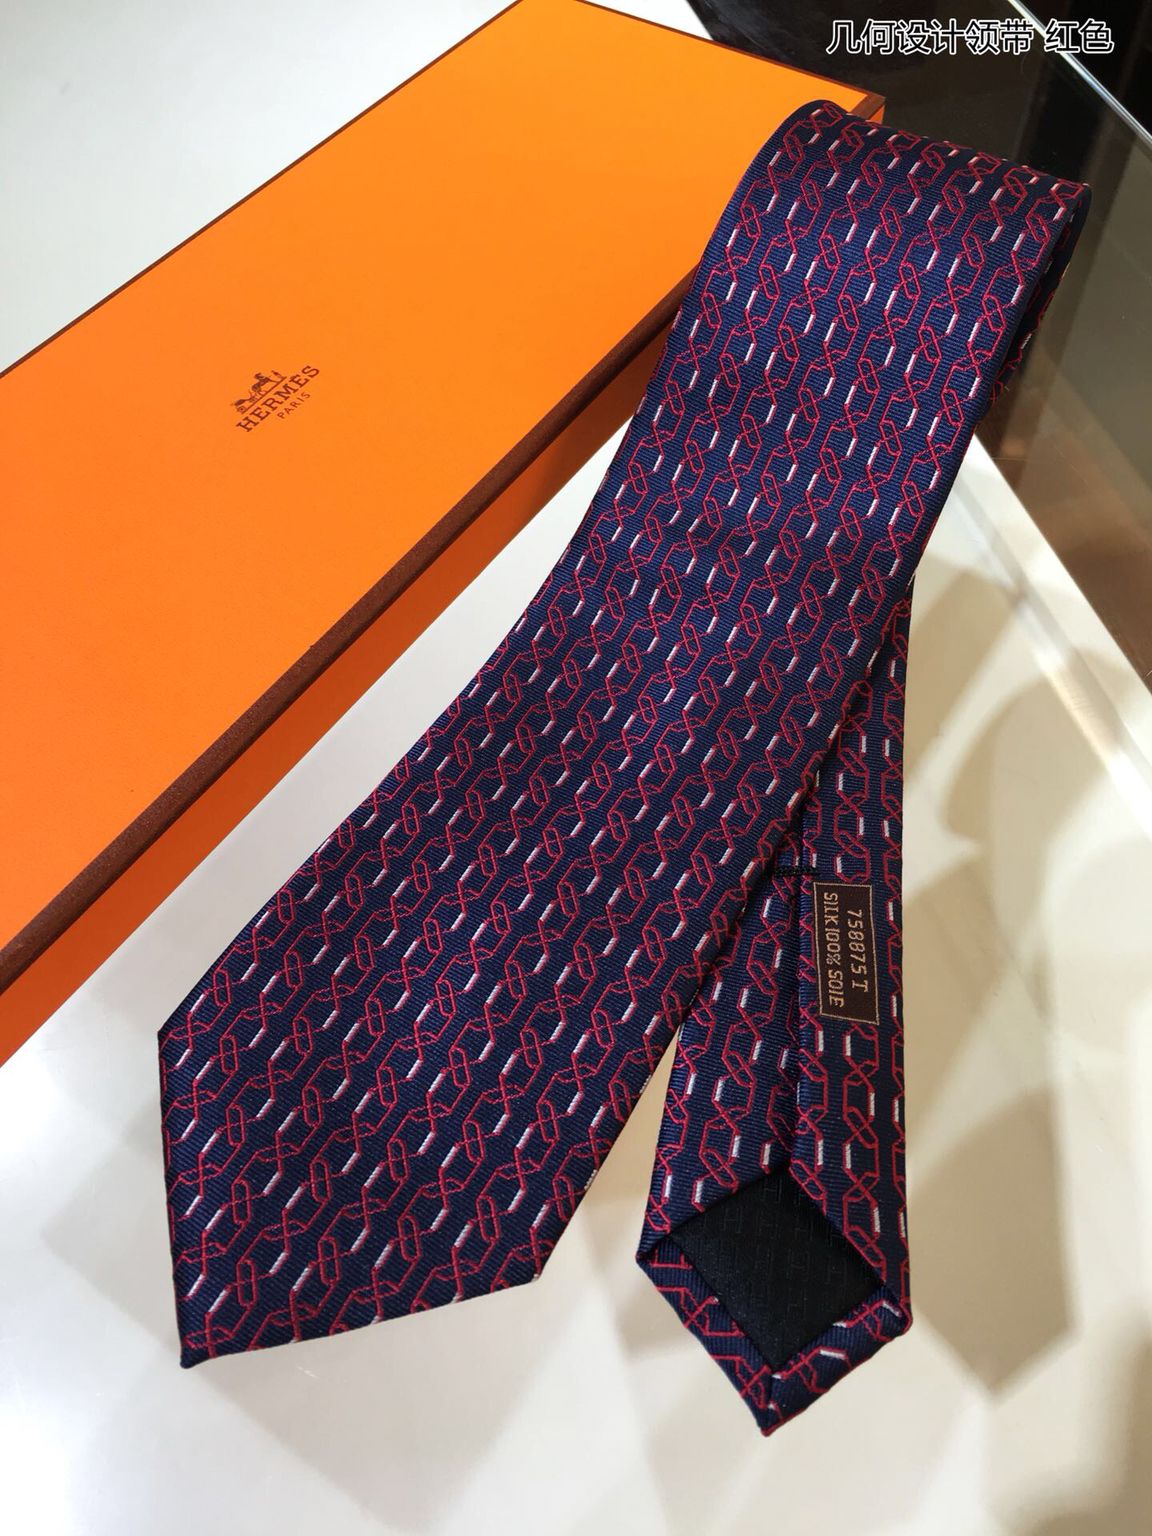 精仿爱马仕男款领带 Hermes爱马仕100%顶级斜纹真丝几何设计领带 精仿爱马仕领带 